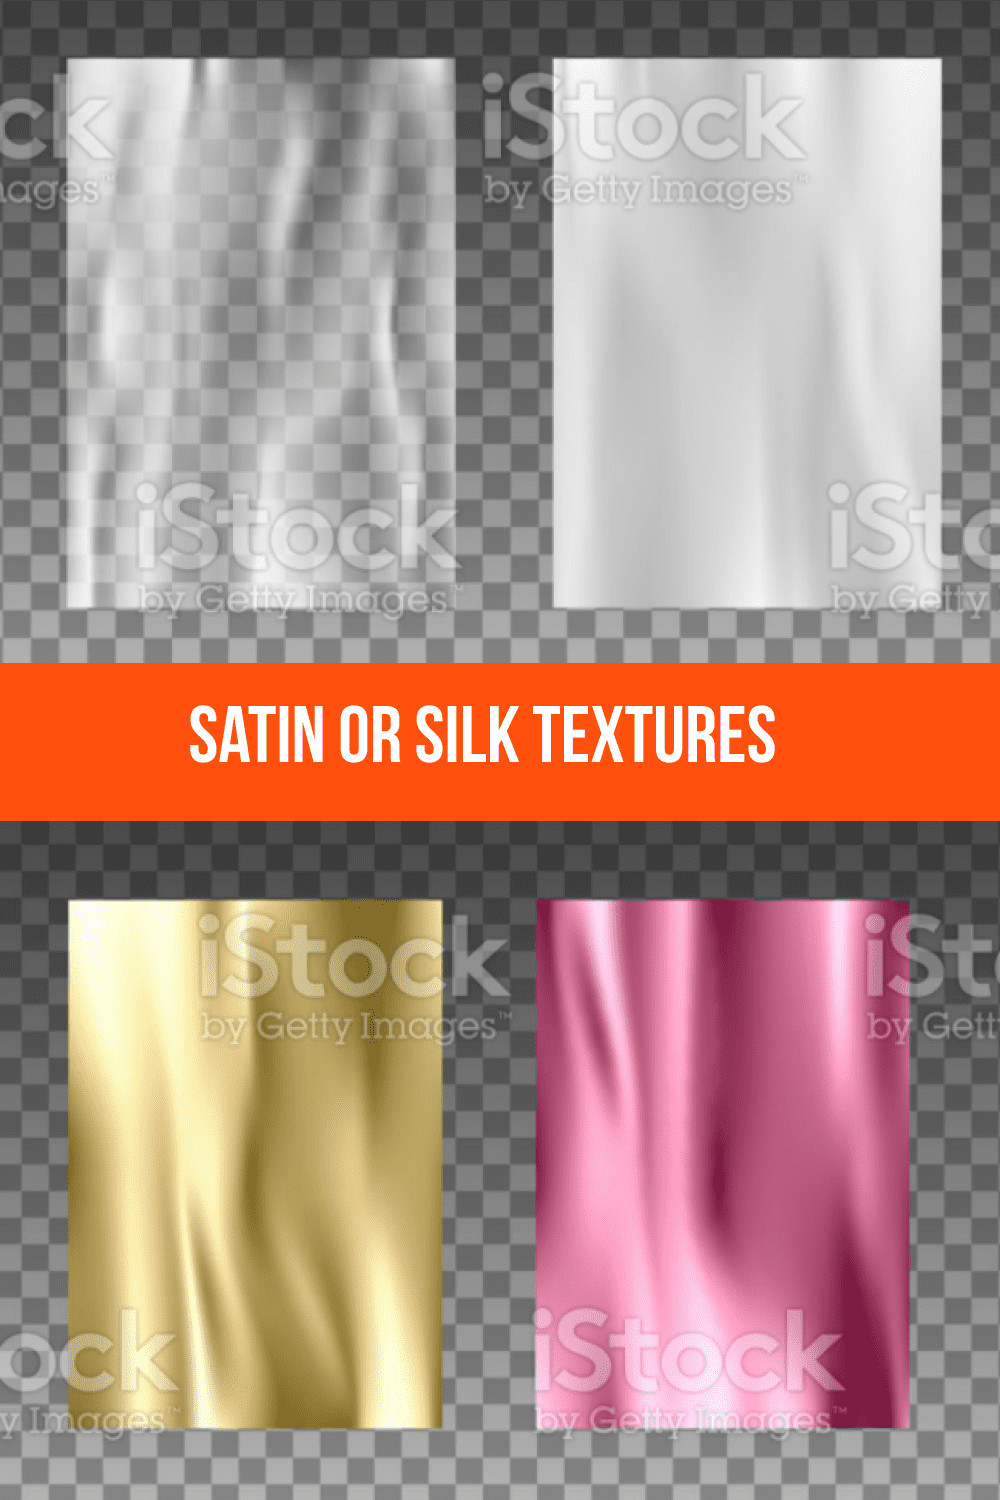 Satin or Silk Textures.